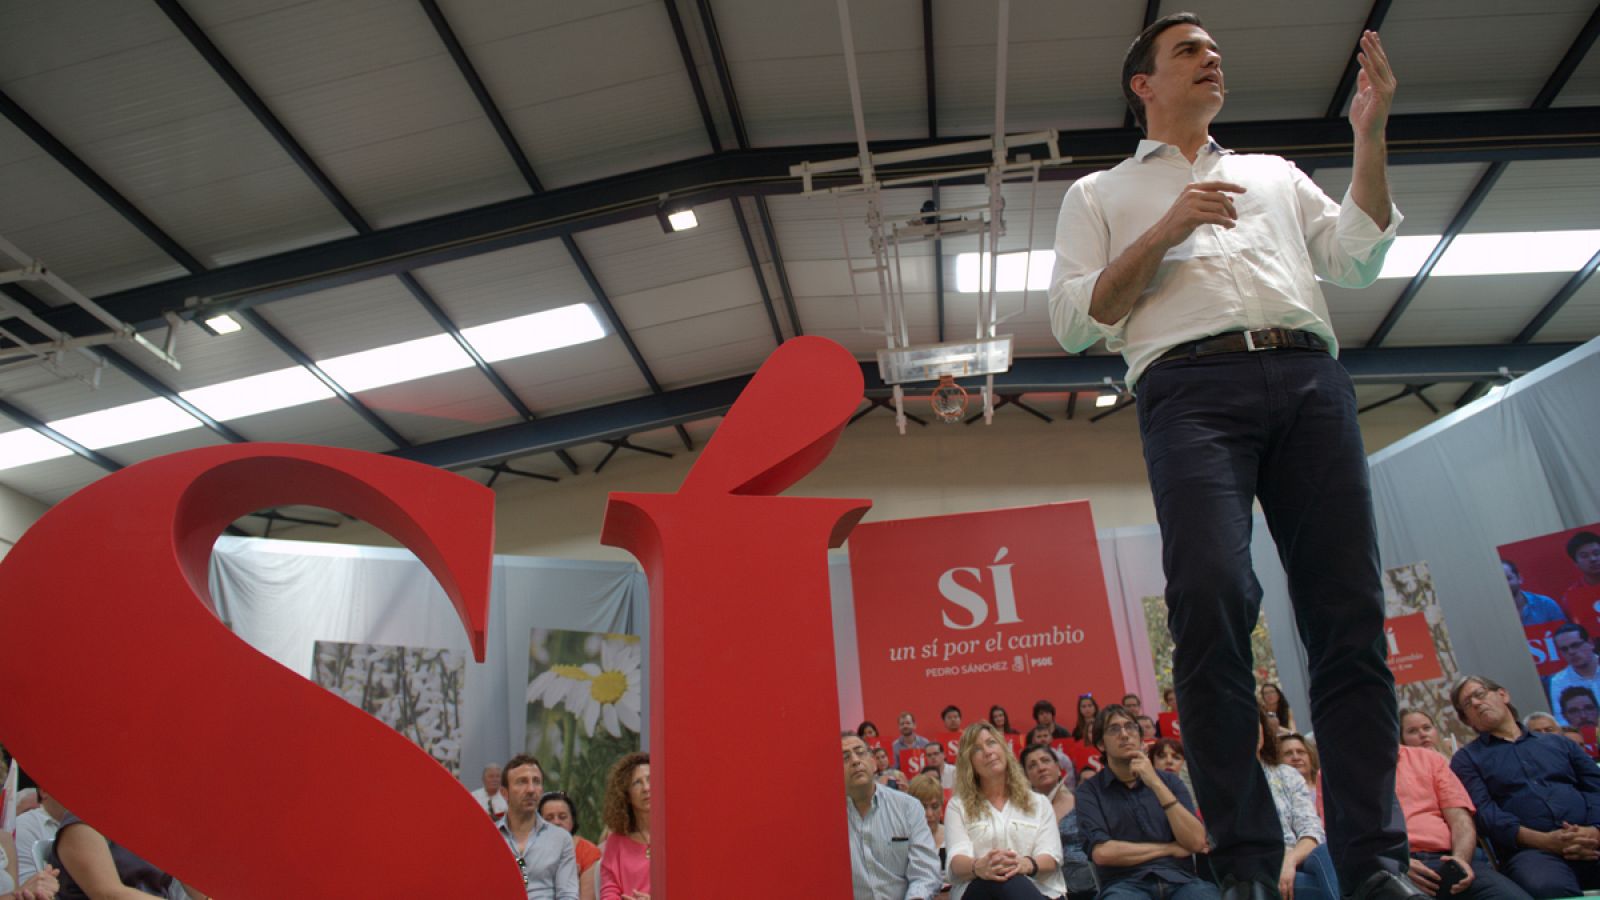 El candidato socialista a la presidencia del Gobierno, Pedro Sánchez, durante un acto político en Palma de Mallorca